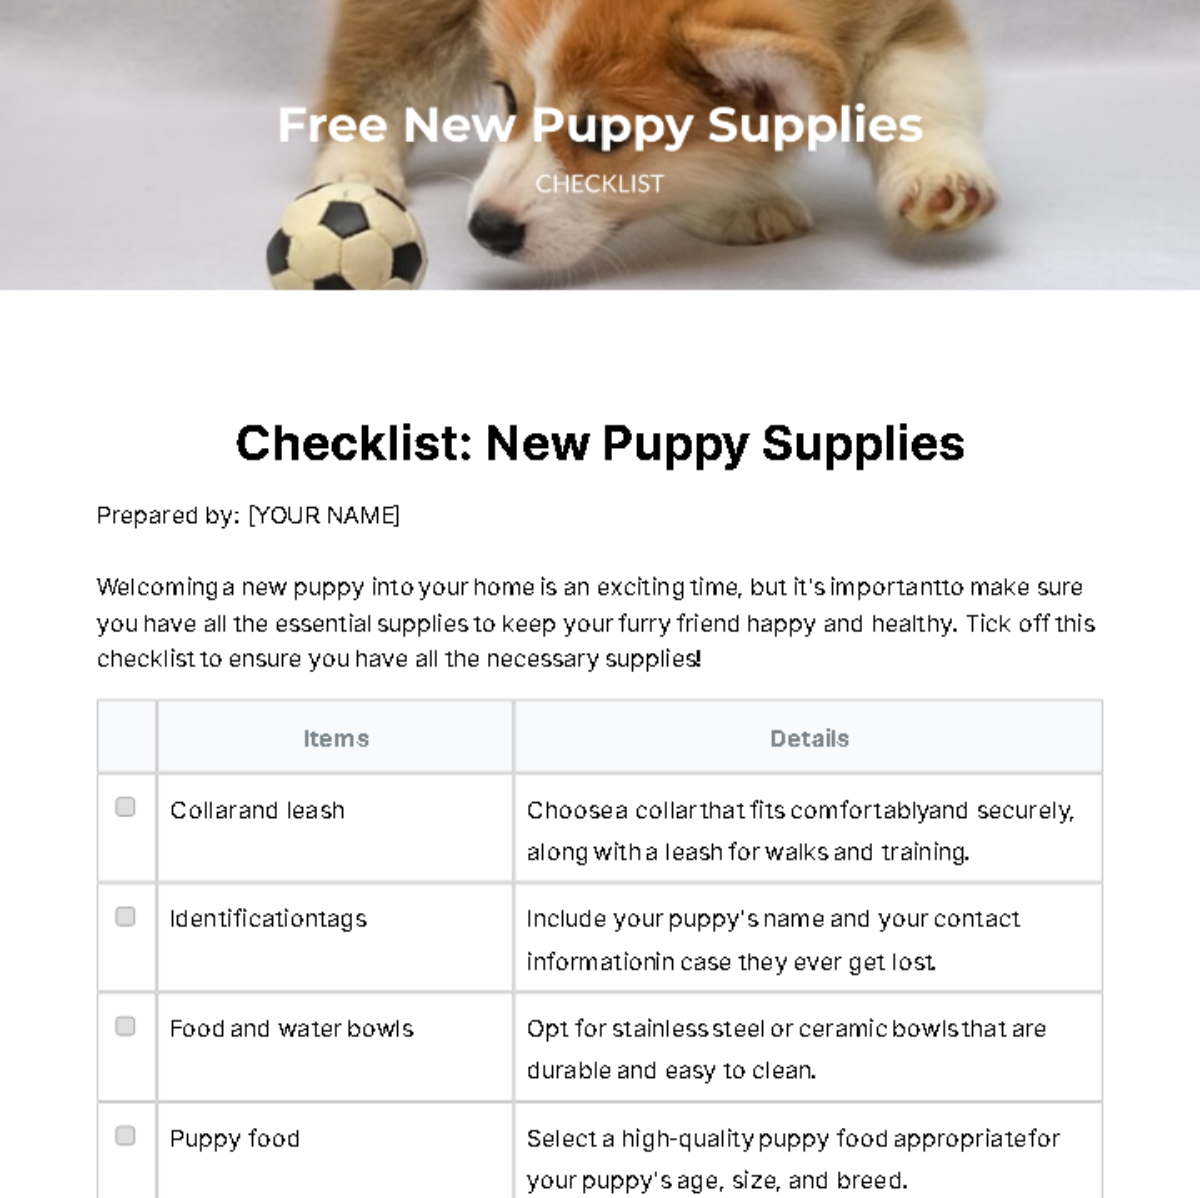 Free New Puppy Supplies Checklist Template